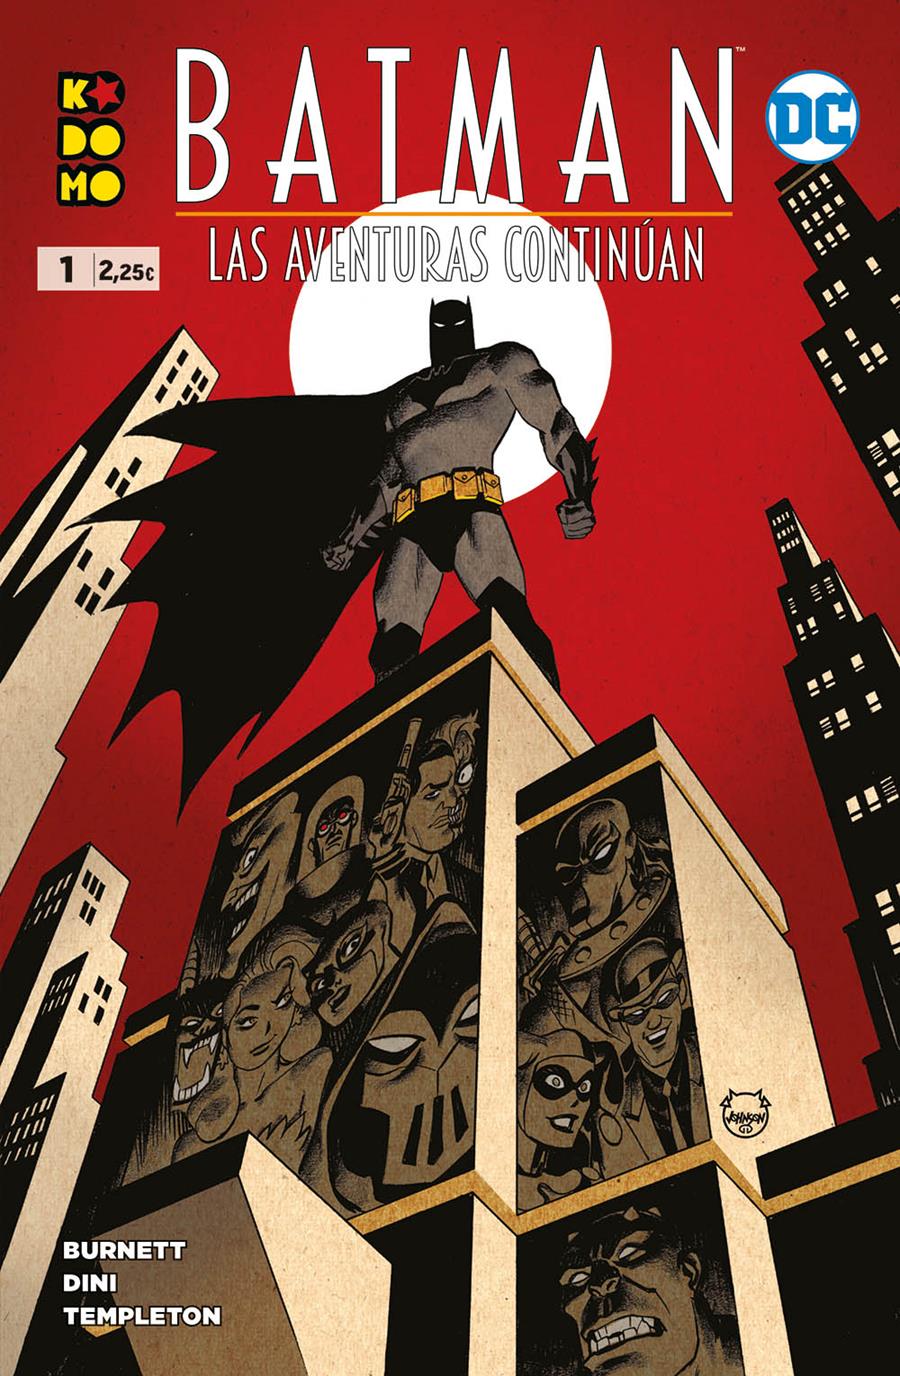 Batman: Las aventuras continúan núm. 1 de 8 | N0721-ECC38 | Alan Burnett / Paul Dini / Ty Templeton | Terra de Còmic - Tu tienda de cómics online especializada en cómics, manga y merchandising